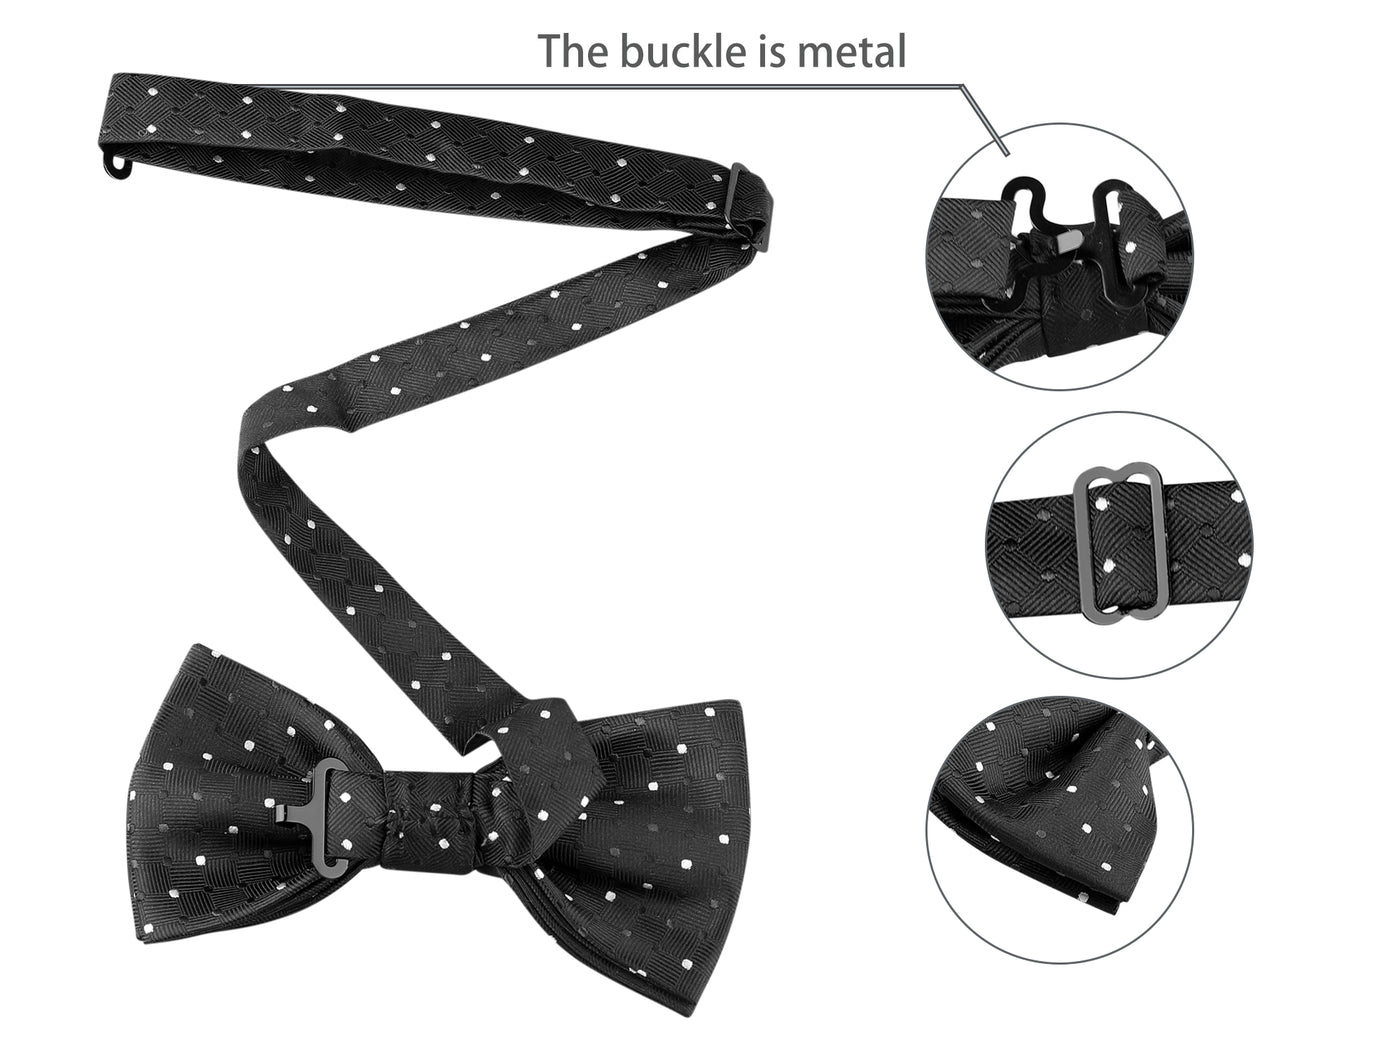 Allegra K Pocket Square Necktie Bowtie Classic Polka Dots Tie Set